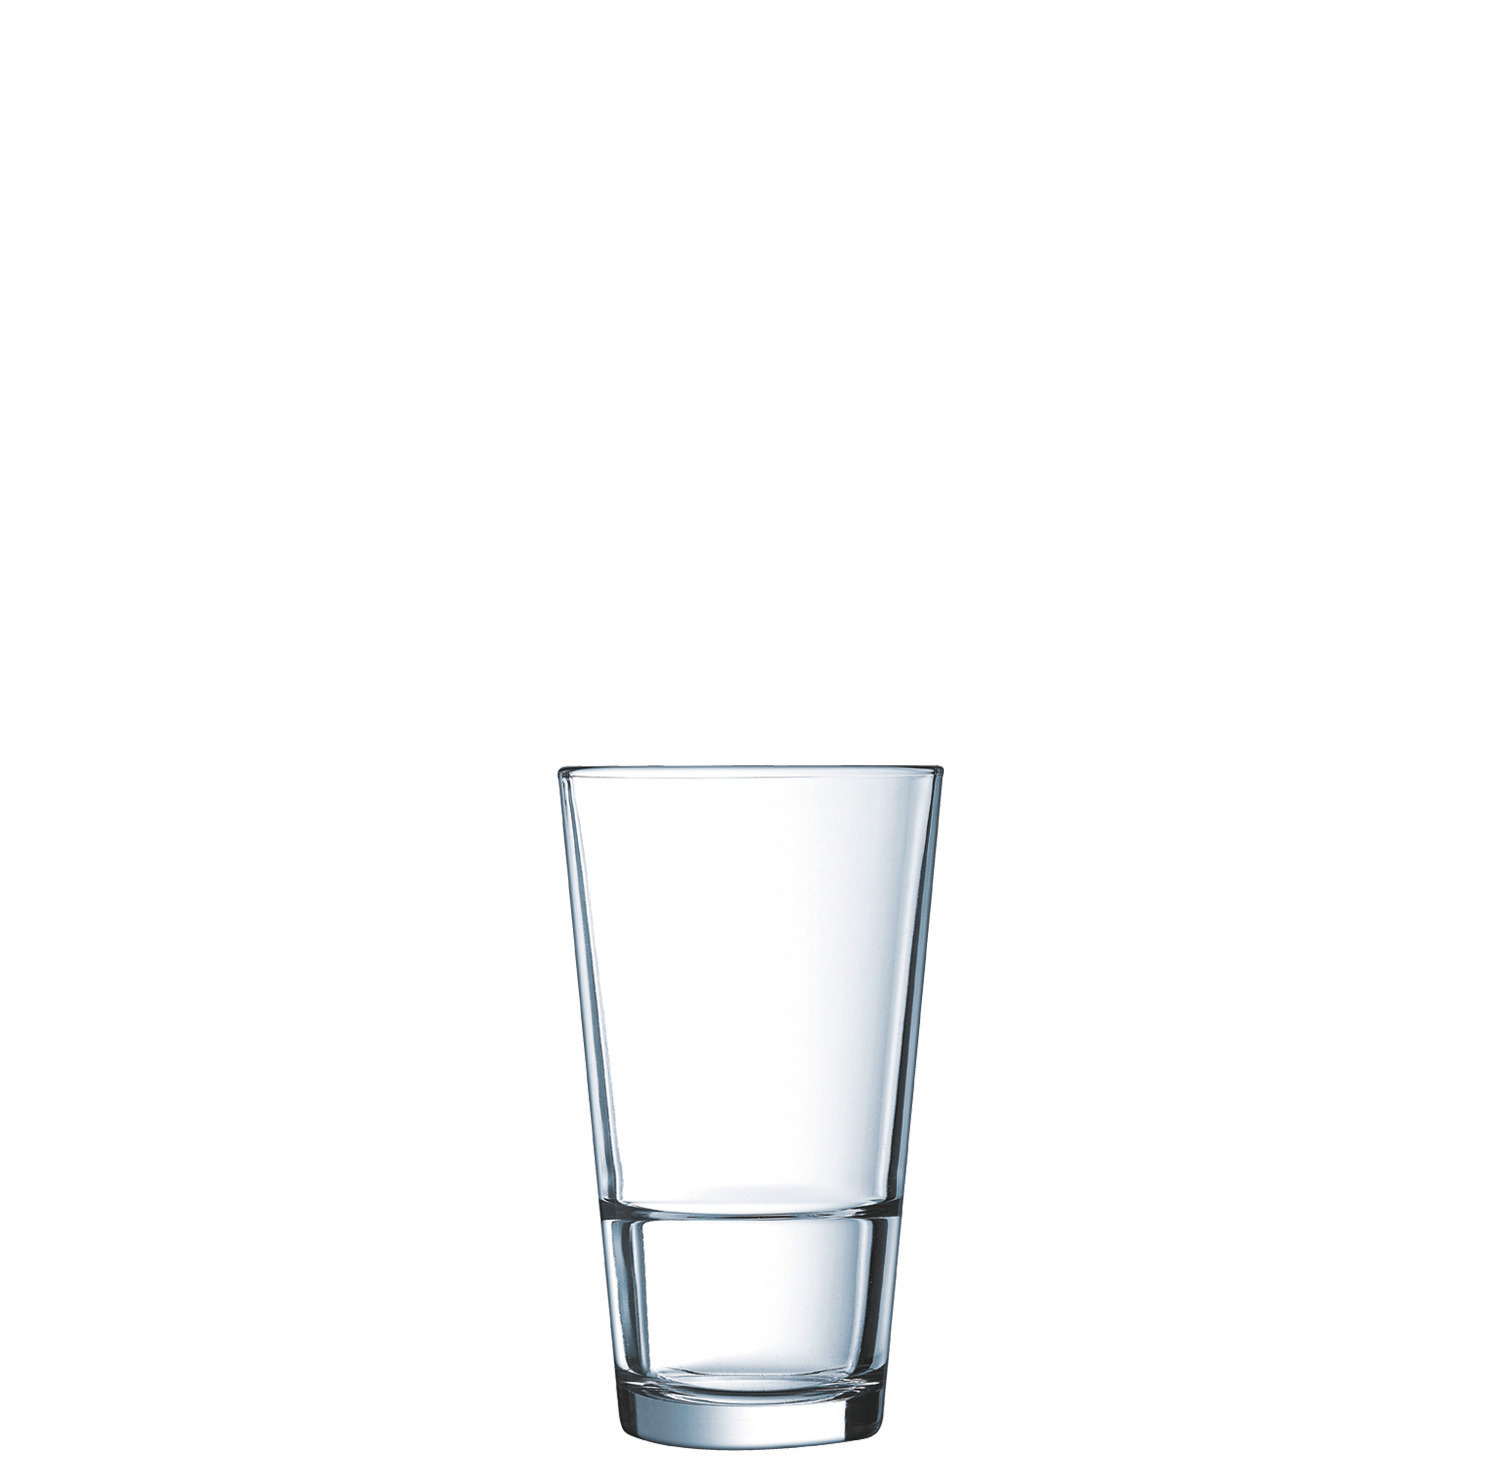 Longdrinkglas "FH35" stapelbar 78 mm / 0,35 l transparent